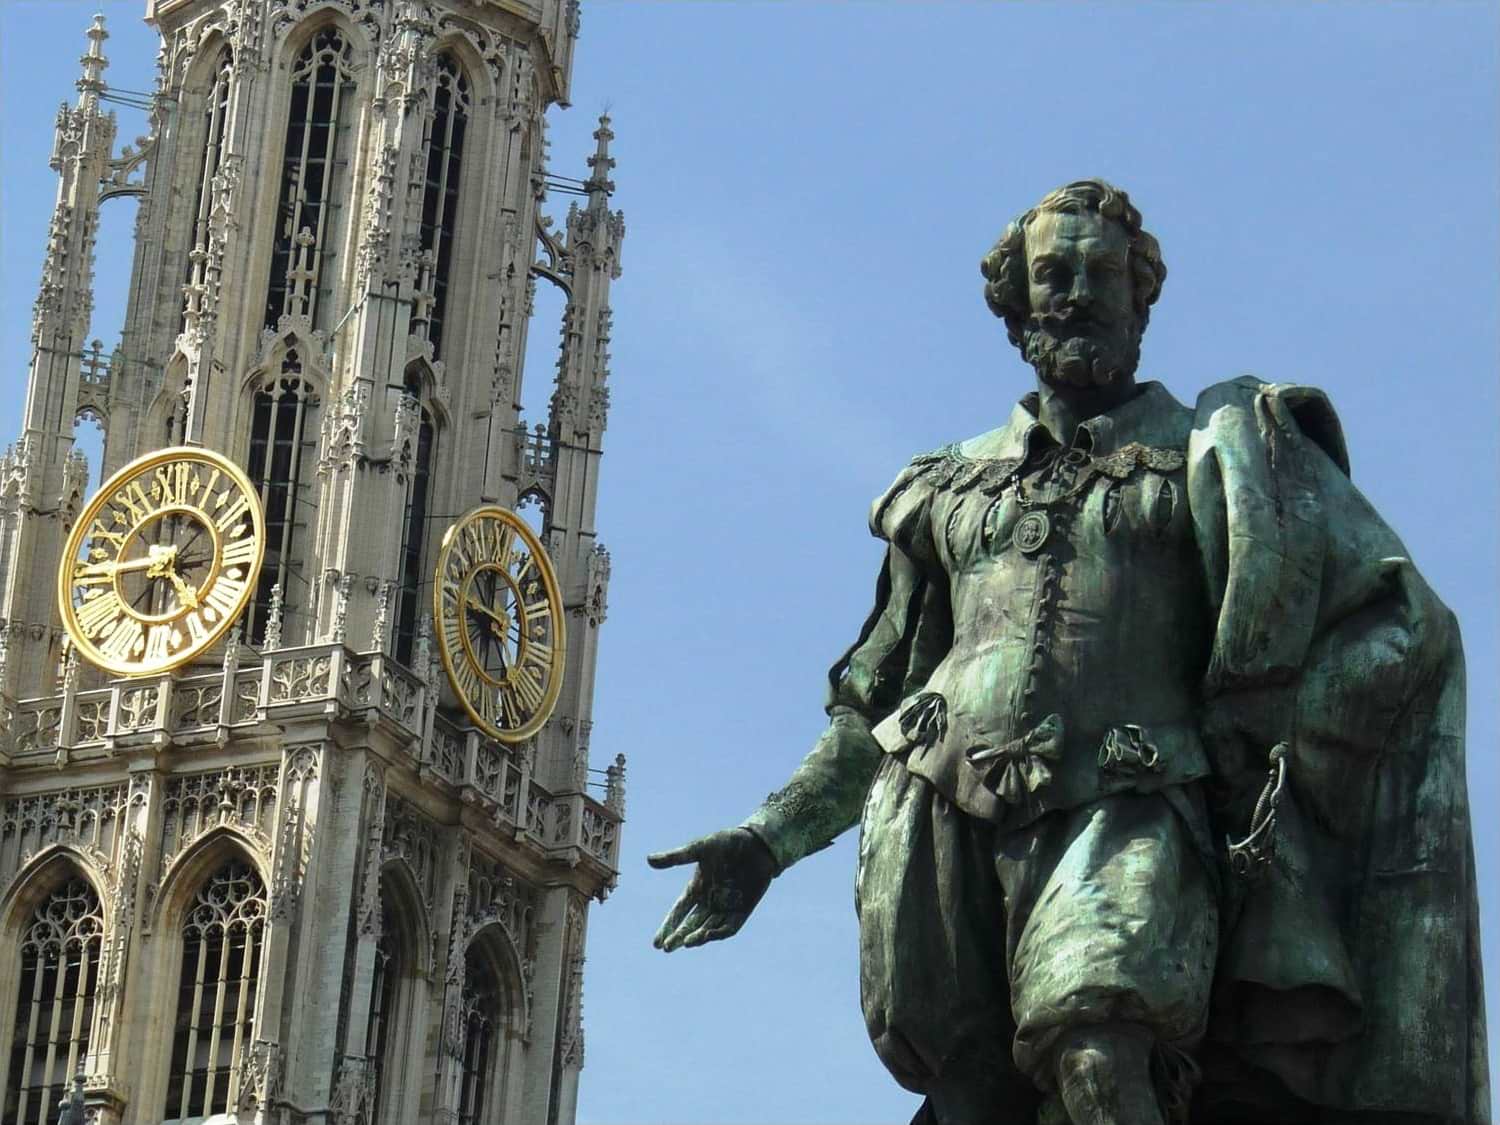 Antwerpen und seine Kathedrale heißen Sie wilkommen